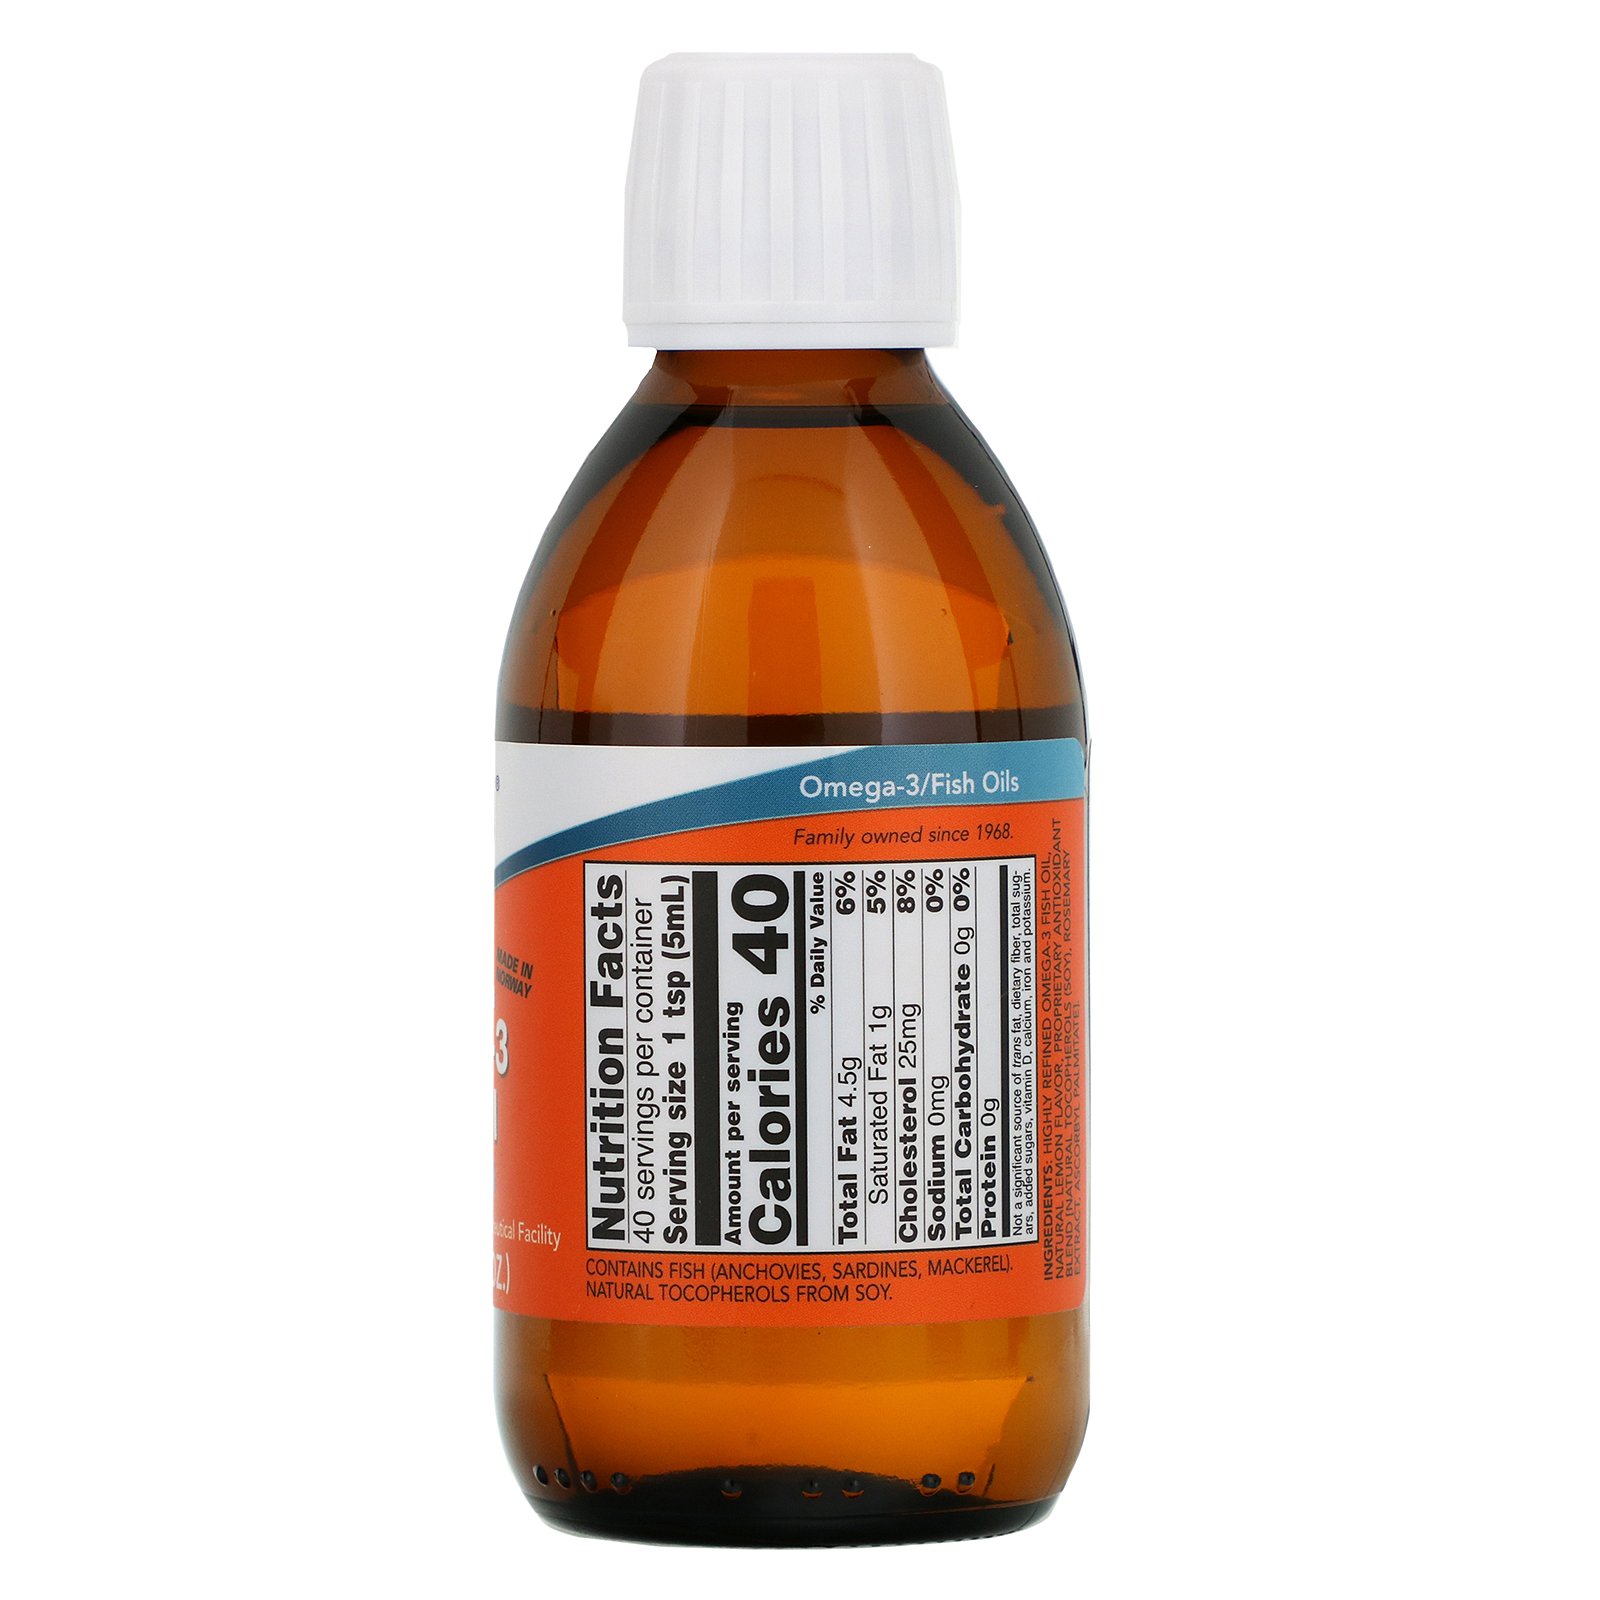 Omega-3 Oil, Омега-3 в Жидкой Форме с Лимонным Вкусом - 200 мл